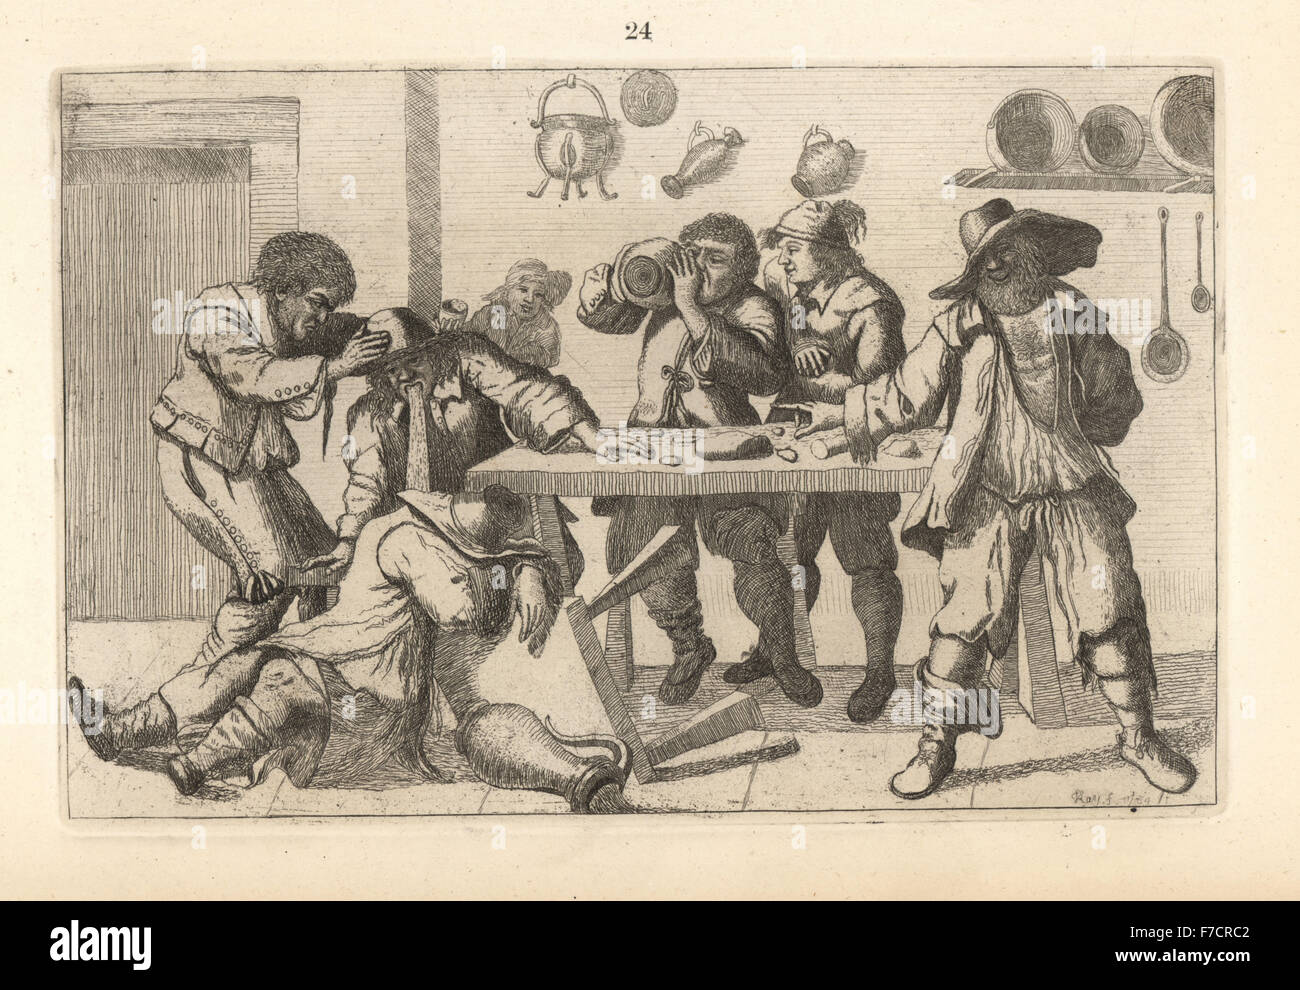 Bettler fest, nach Adriaen van Ostade. Kupferstich von John Kay von A Series of Original Portraits und Karikatur Radierungen, Hugh Paton, Edinburgh, 1842. Stockfoto